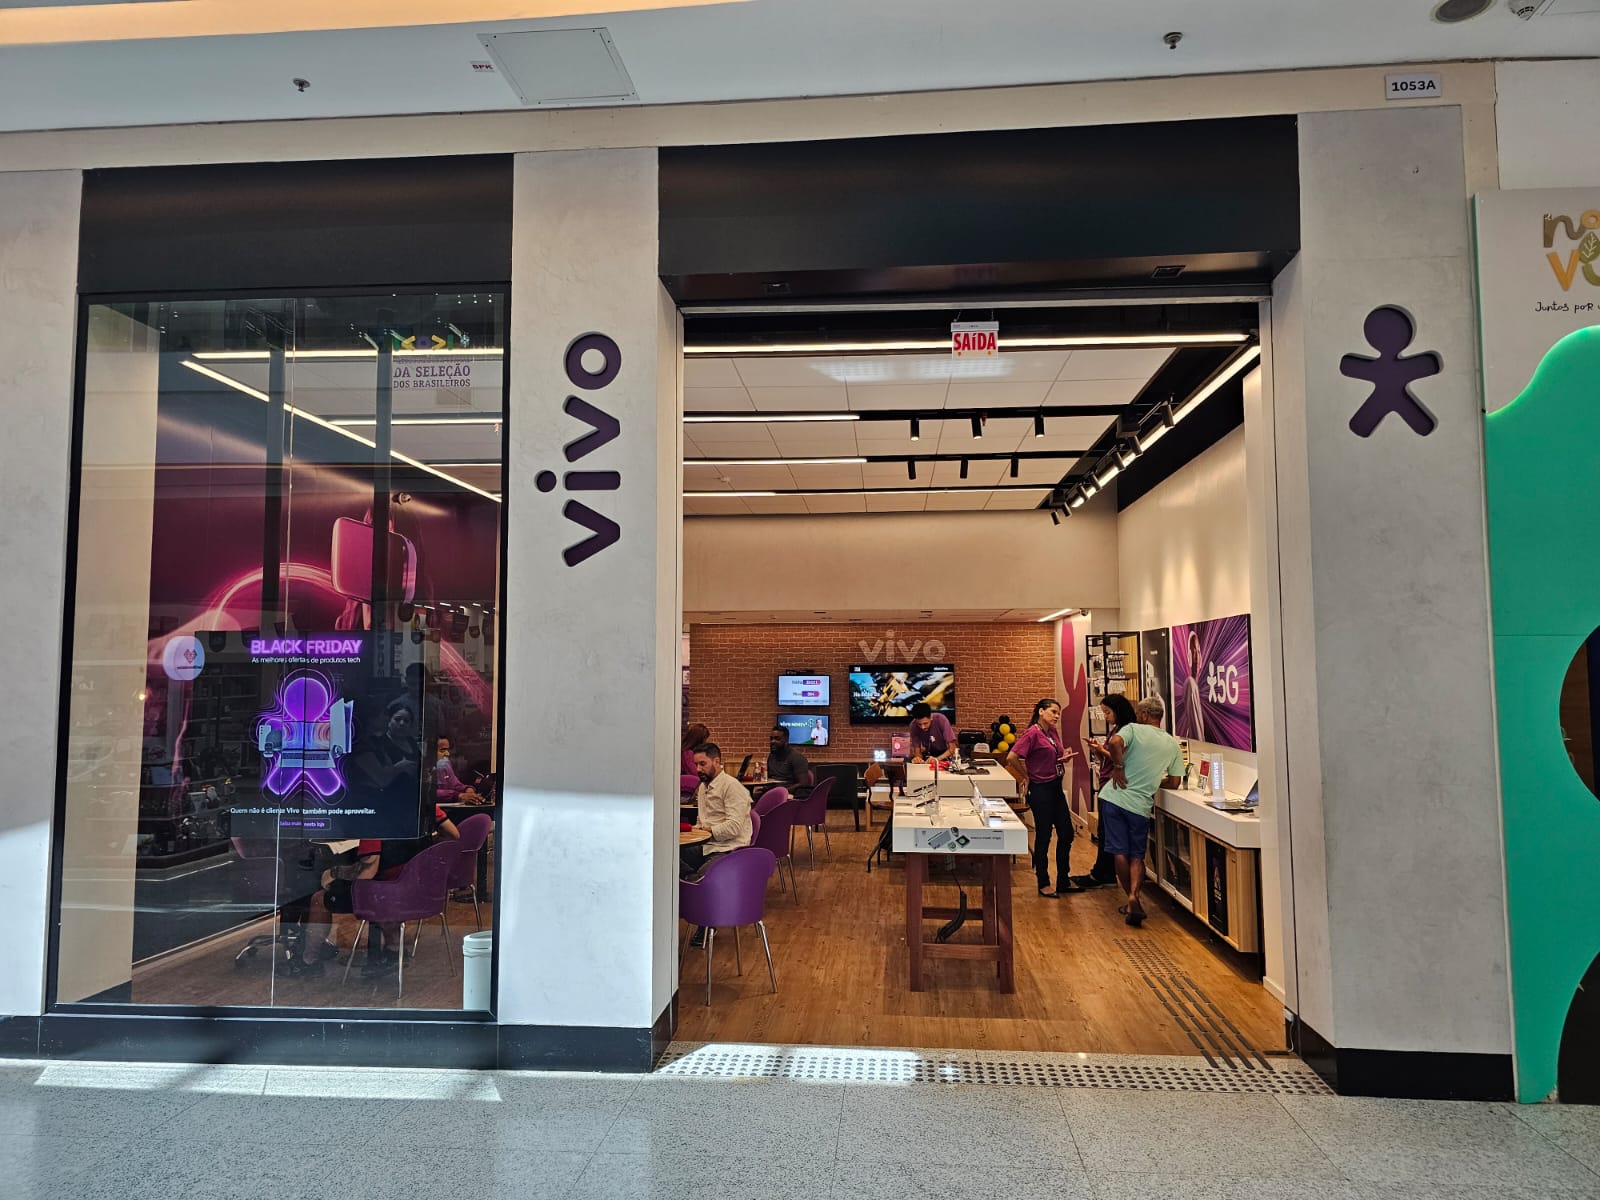 Vivo lança marca Ovvi para venda de acessórios